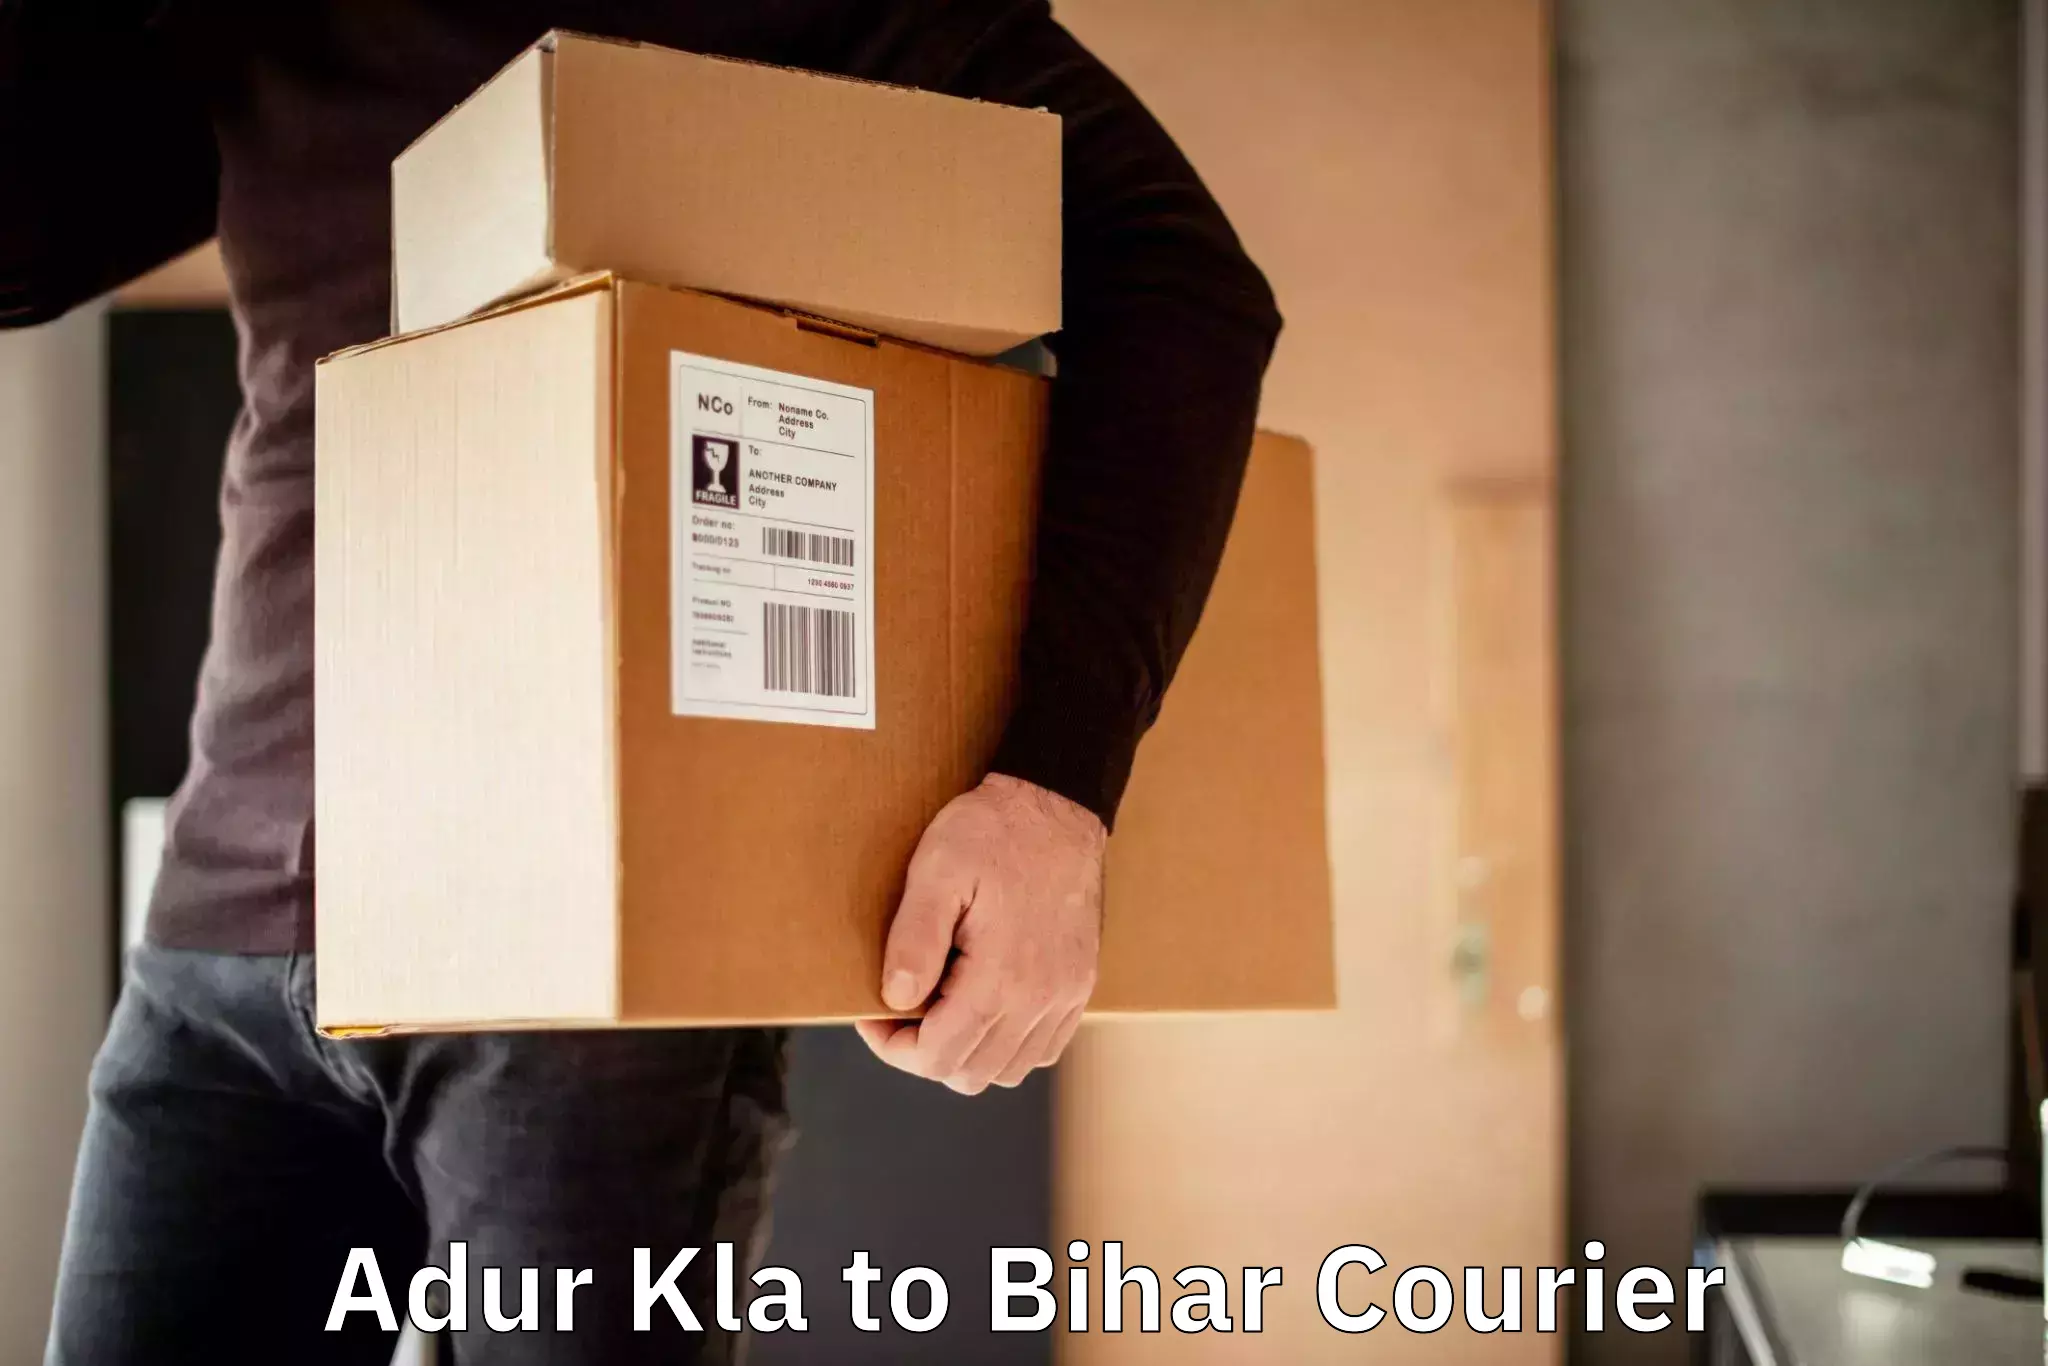 Nationwide parcel services Adur Kla to Katoria